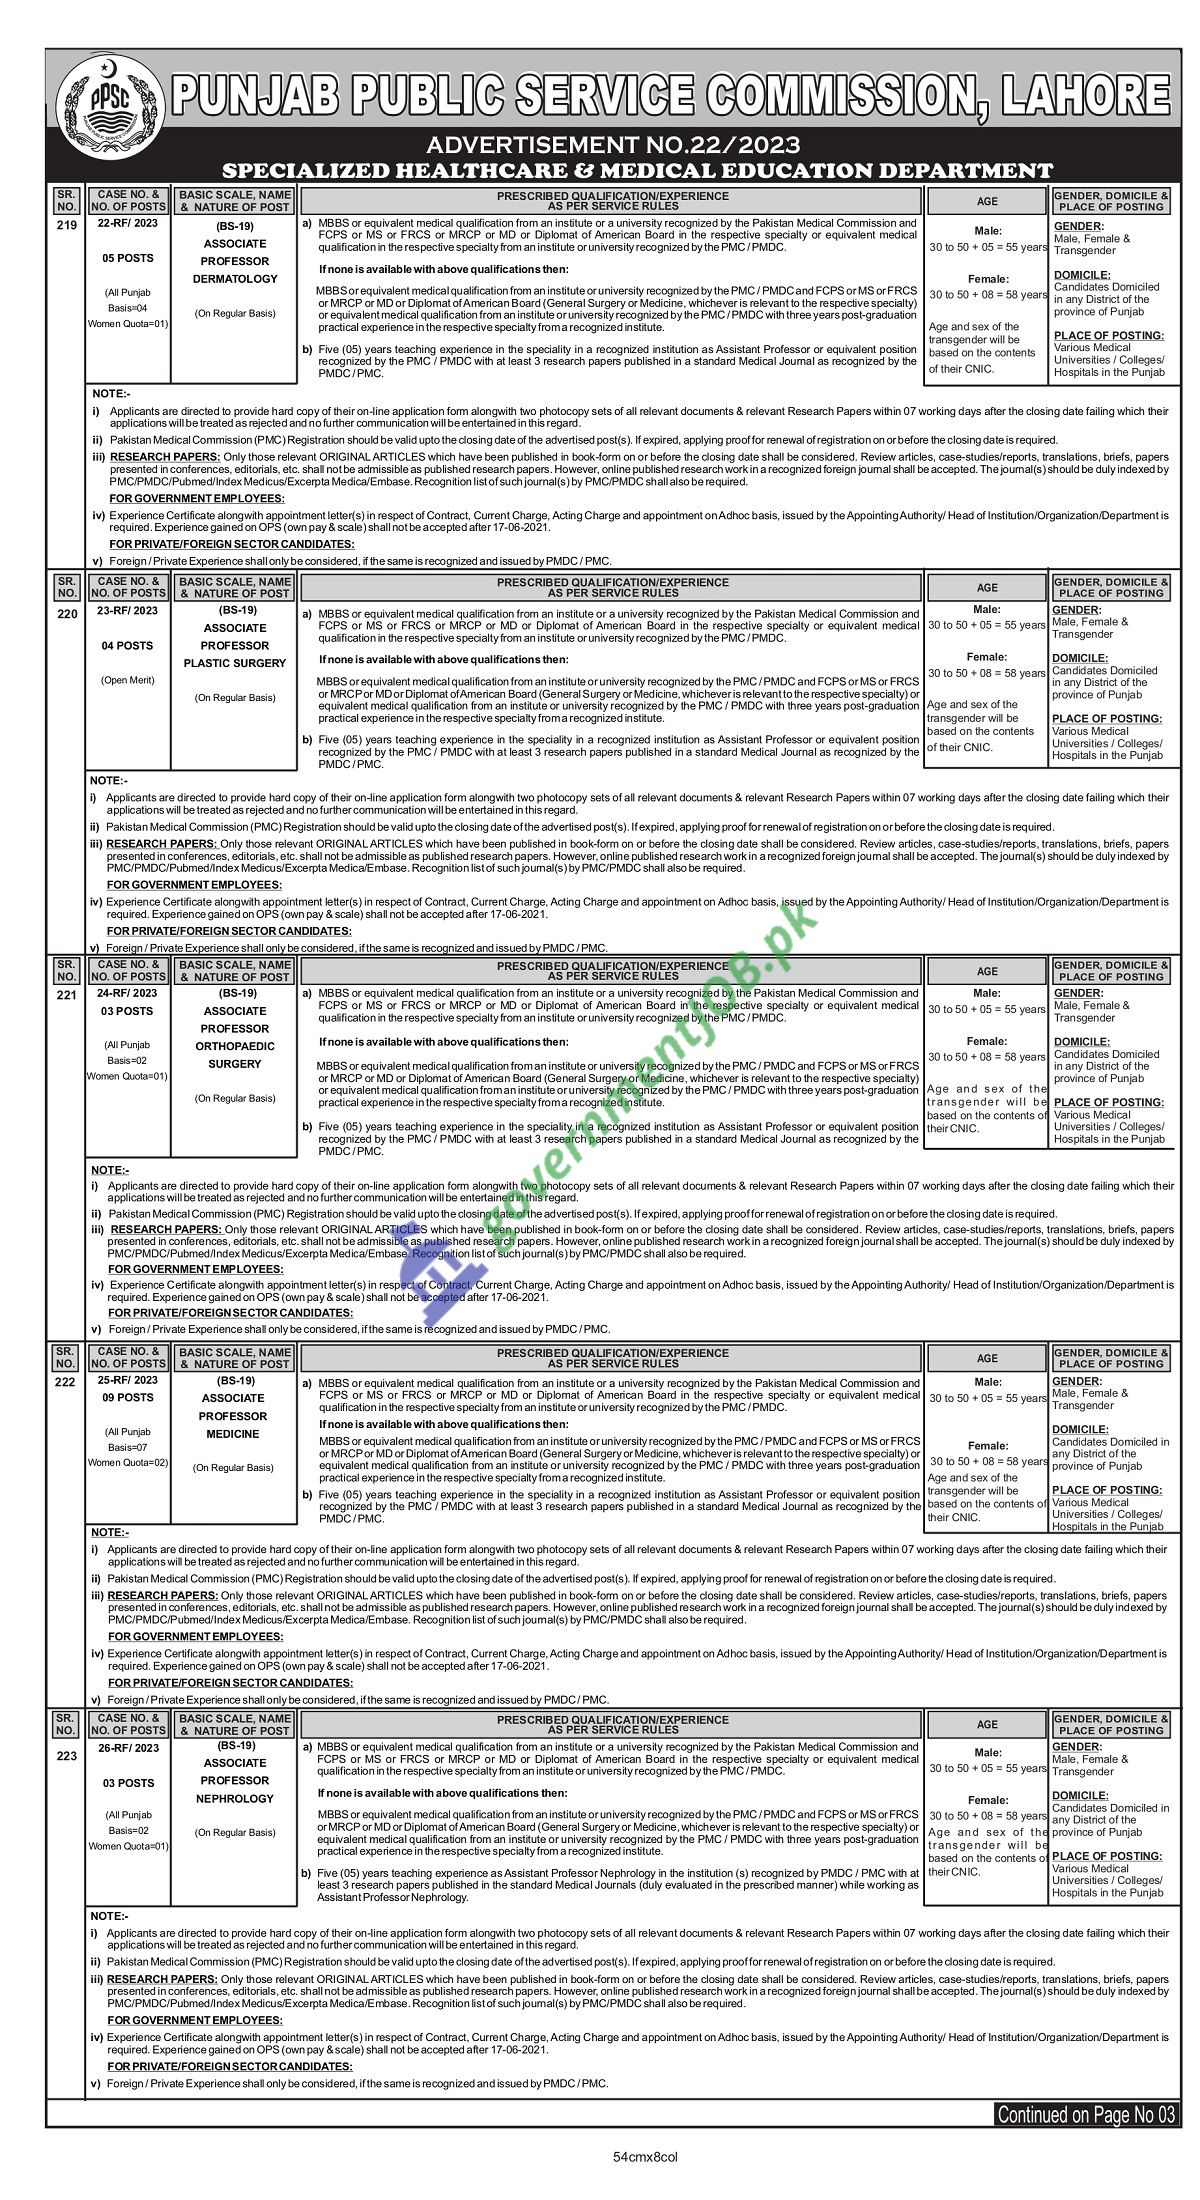 PPSC Job Advt No. 22/2023 - Punjab Public Service Commission Apply Online